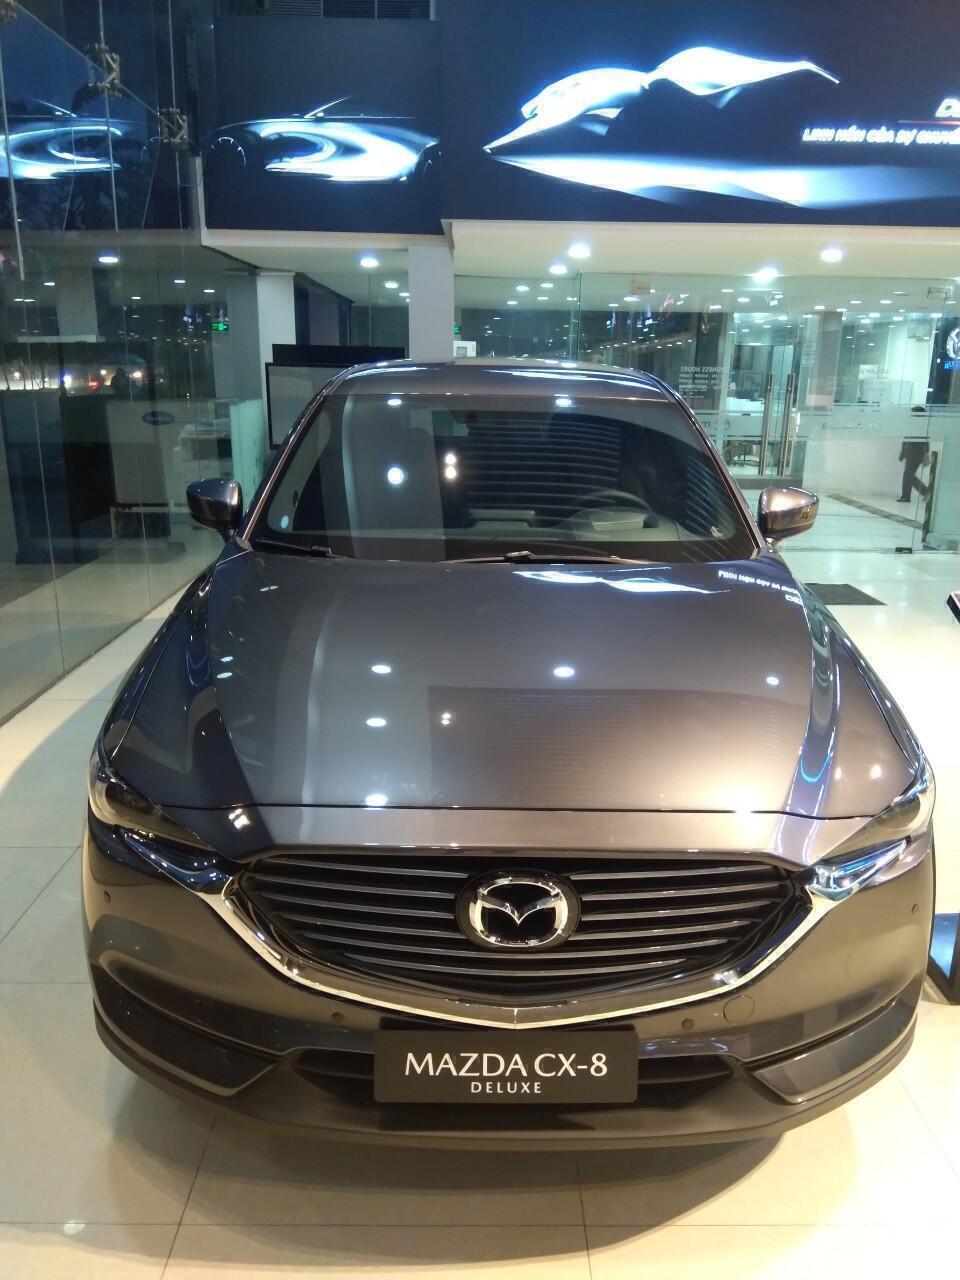 Mazda CX-8 Deluxe